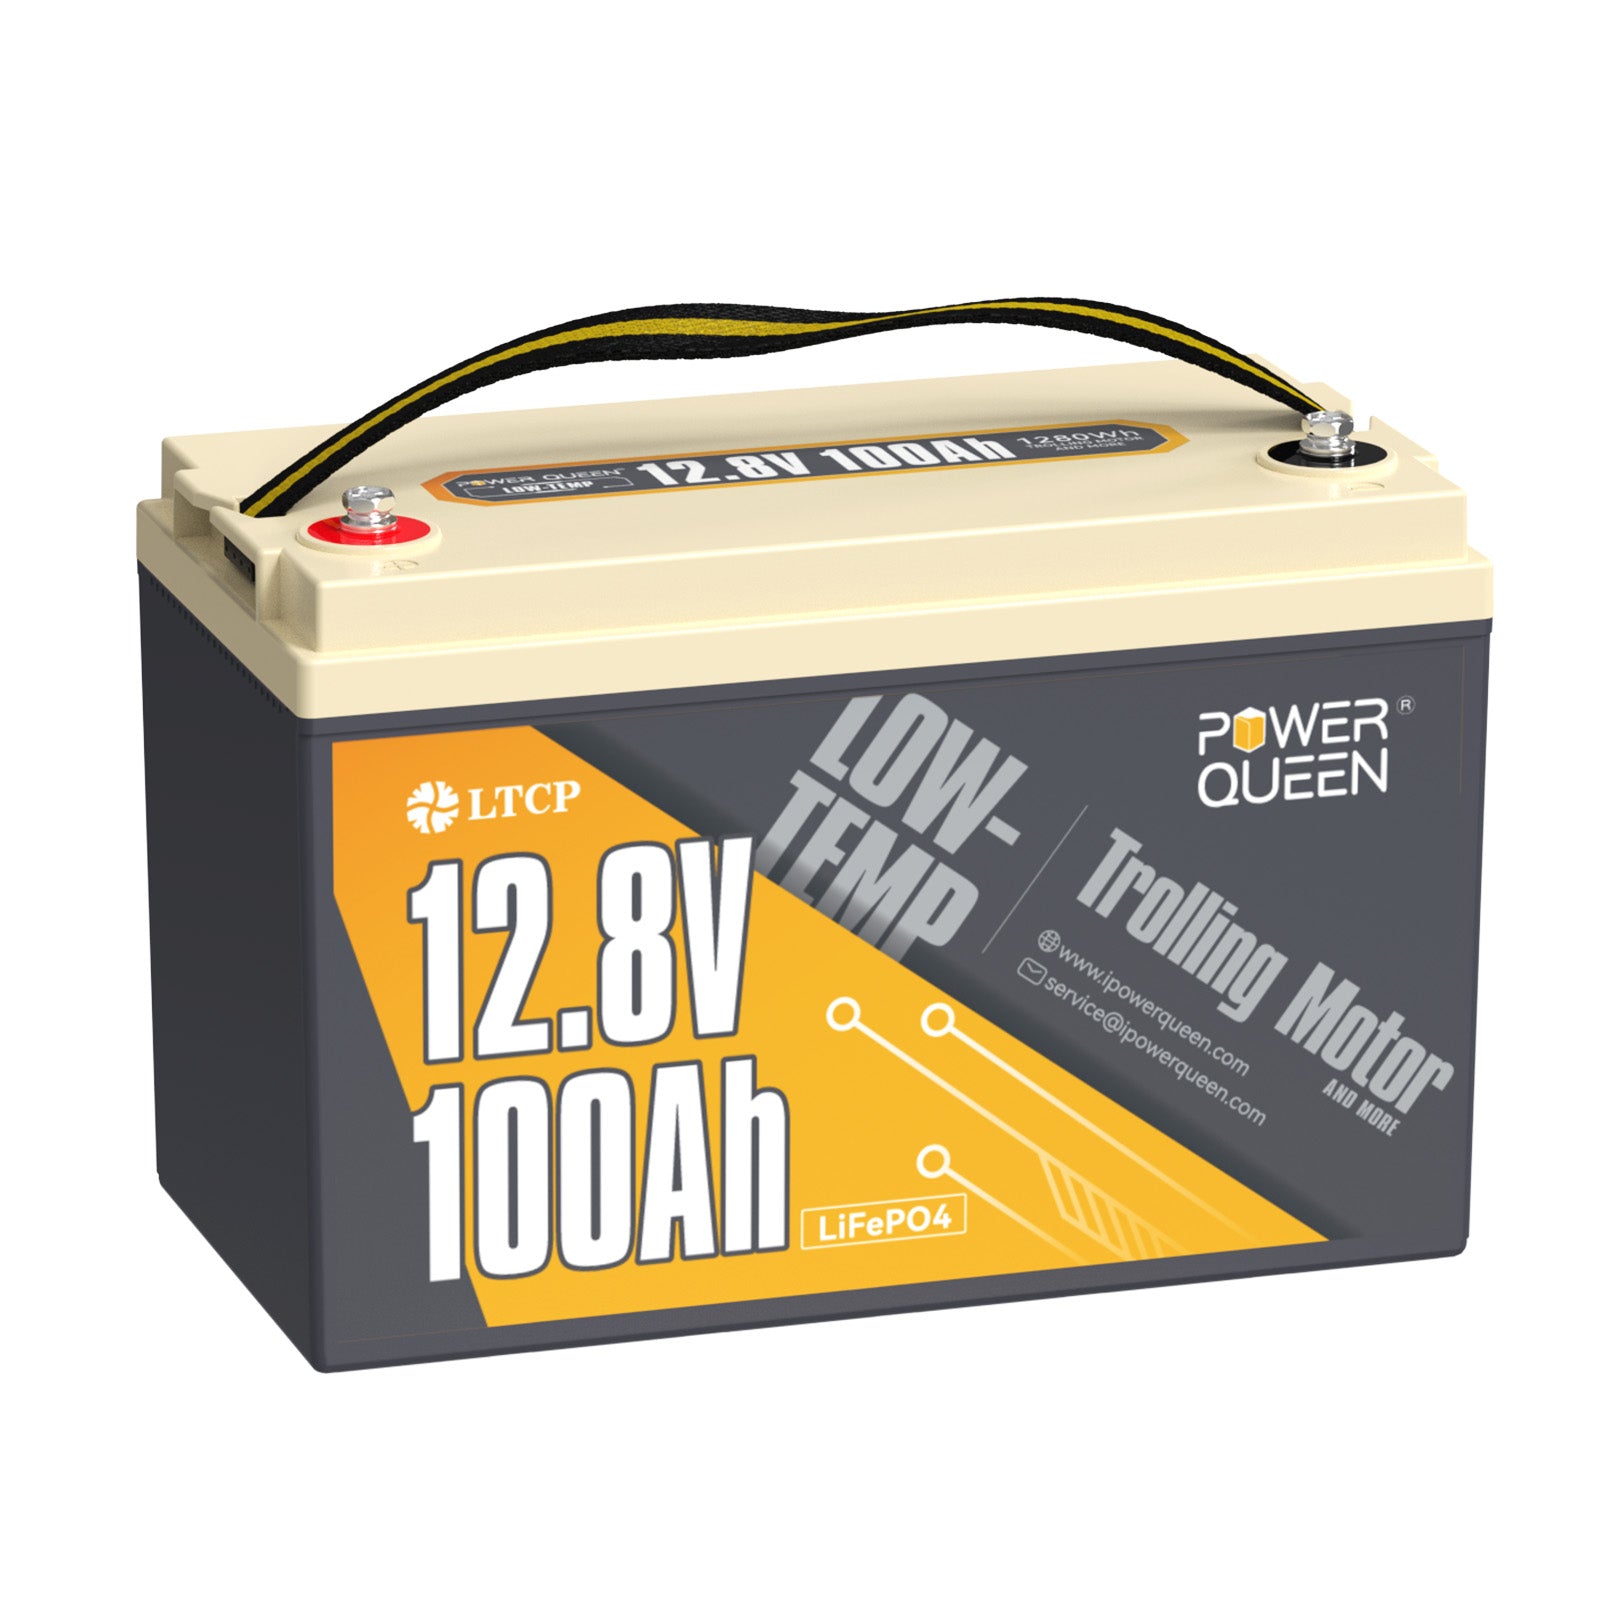 Batteria LiFePO4 a bassa temperatura Power Queen da 12,8 V 100 Ah, batteria per motore da pesca alla traina